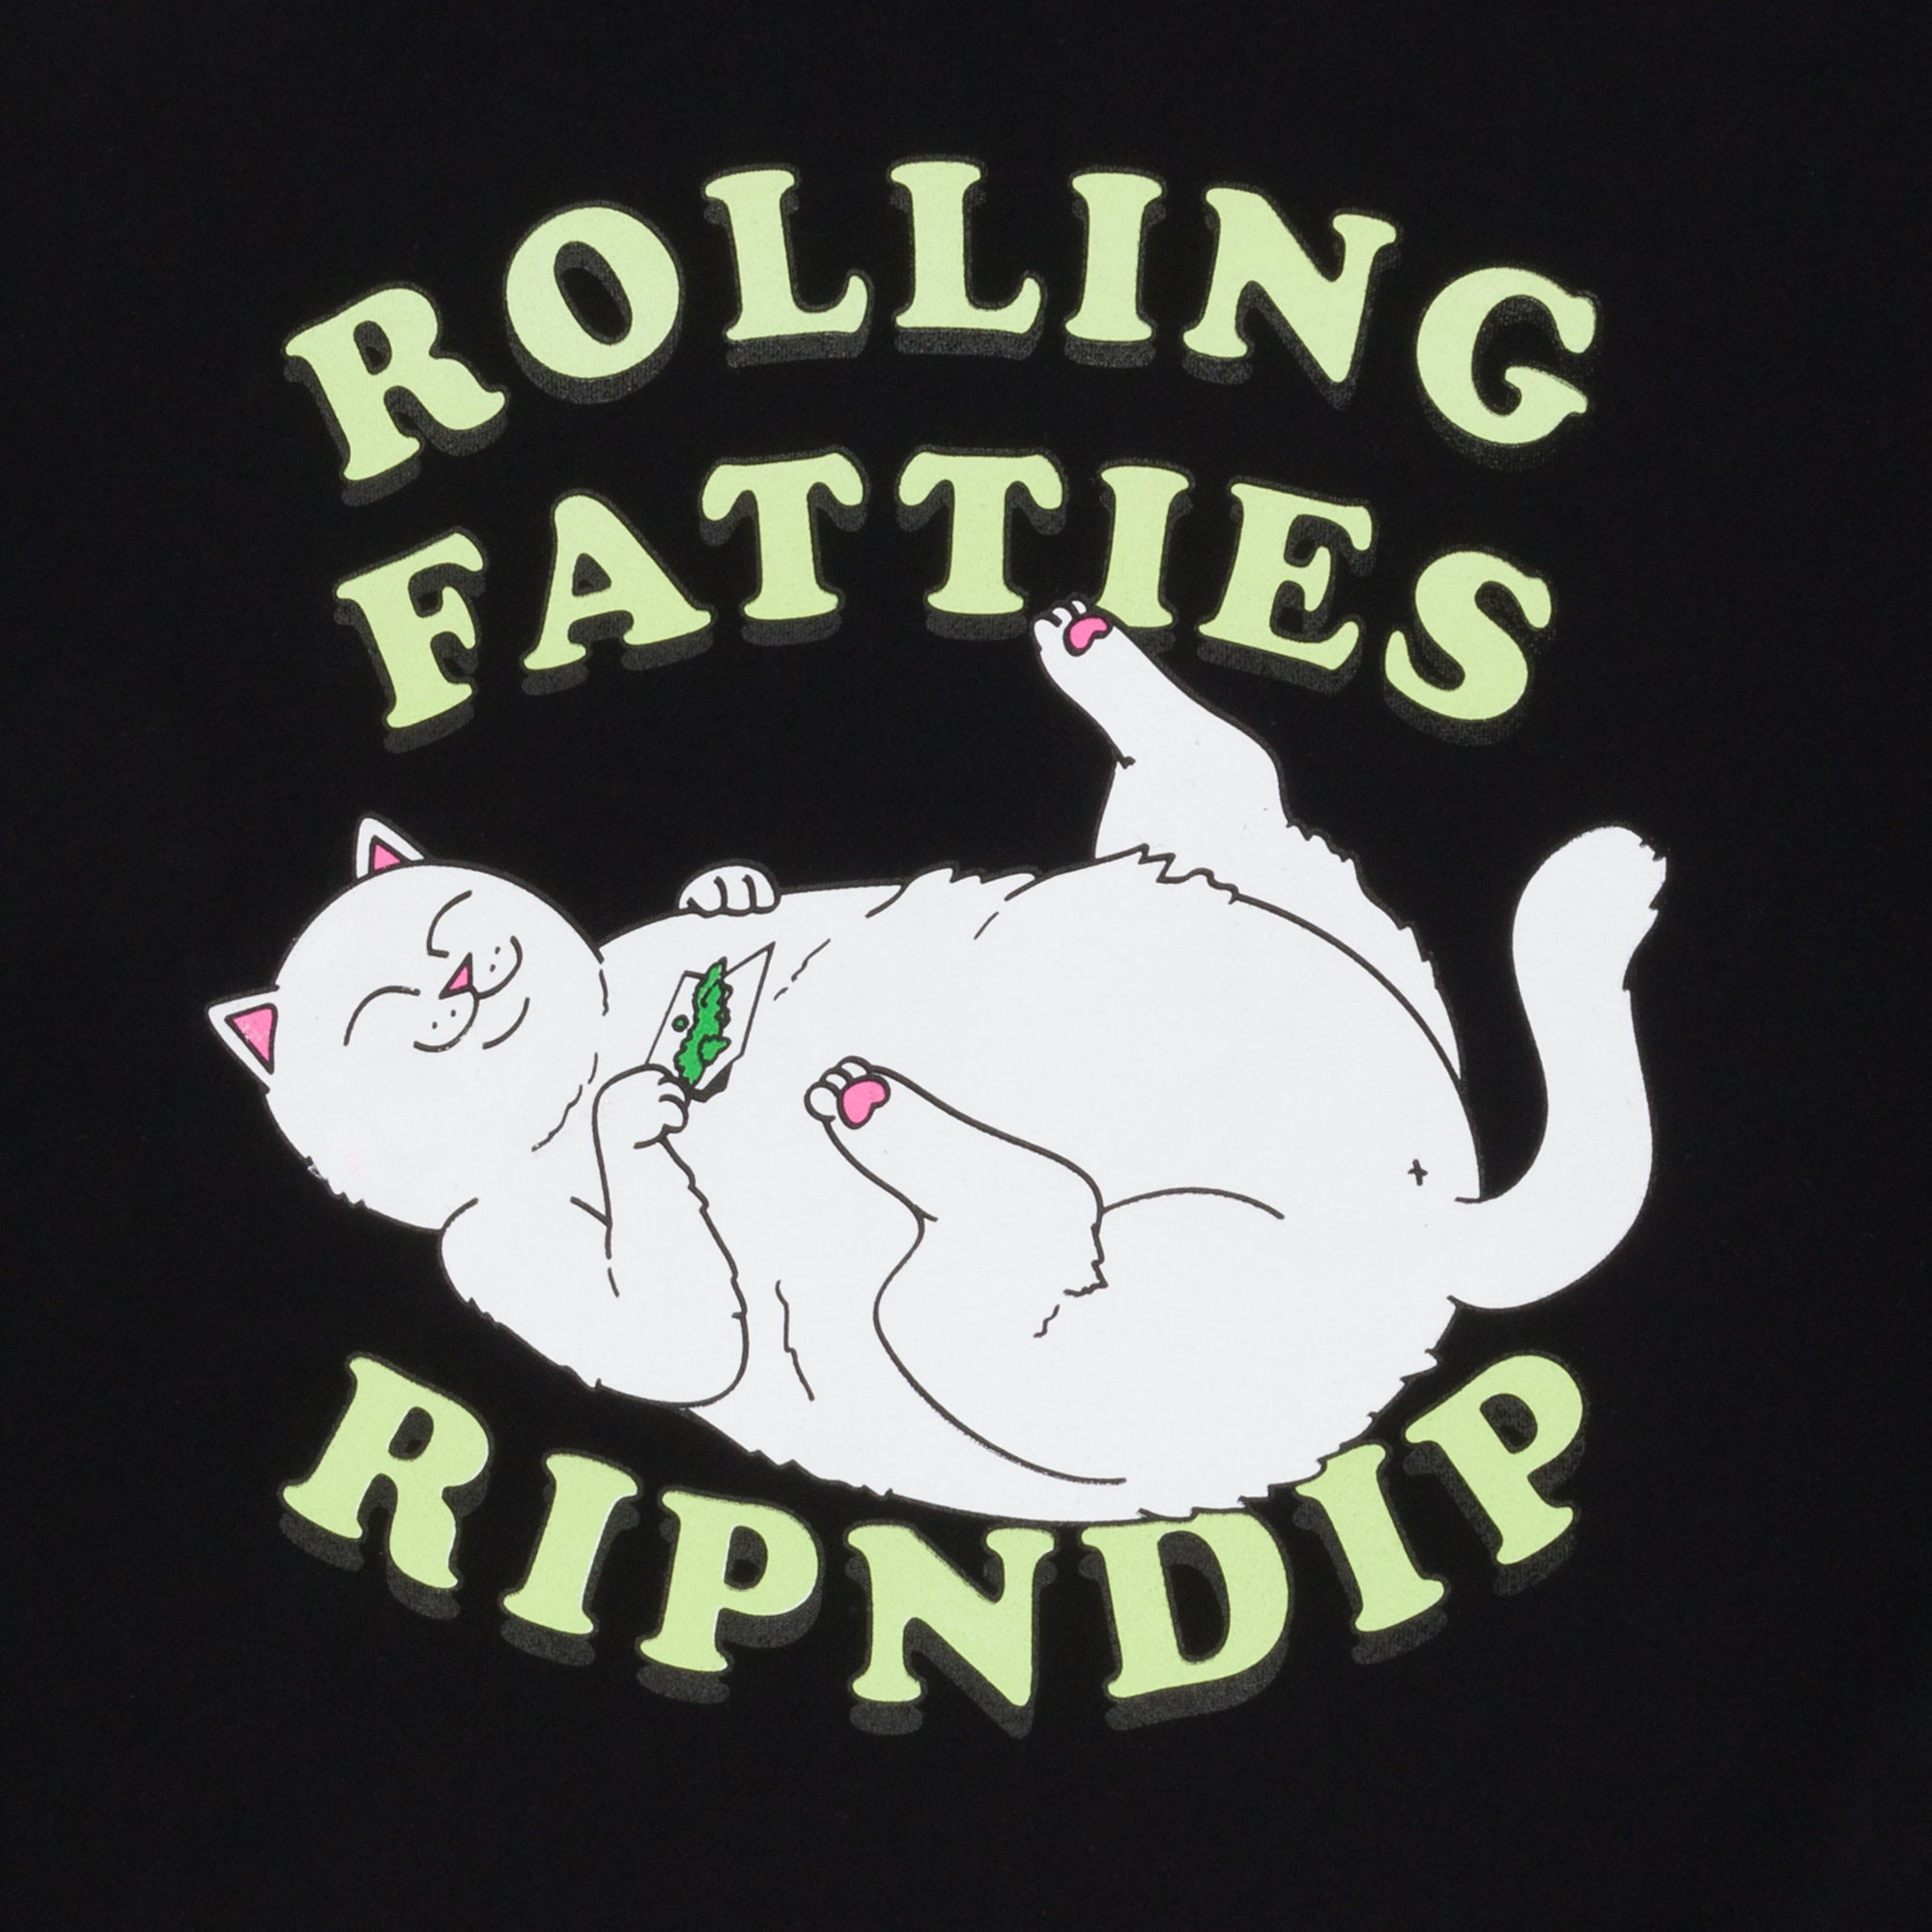 RIPNDIP Rolling Fatties Hoodie (Black)